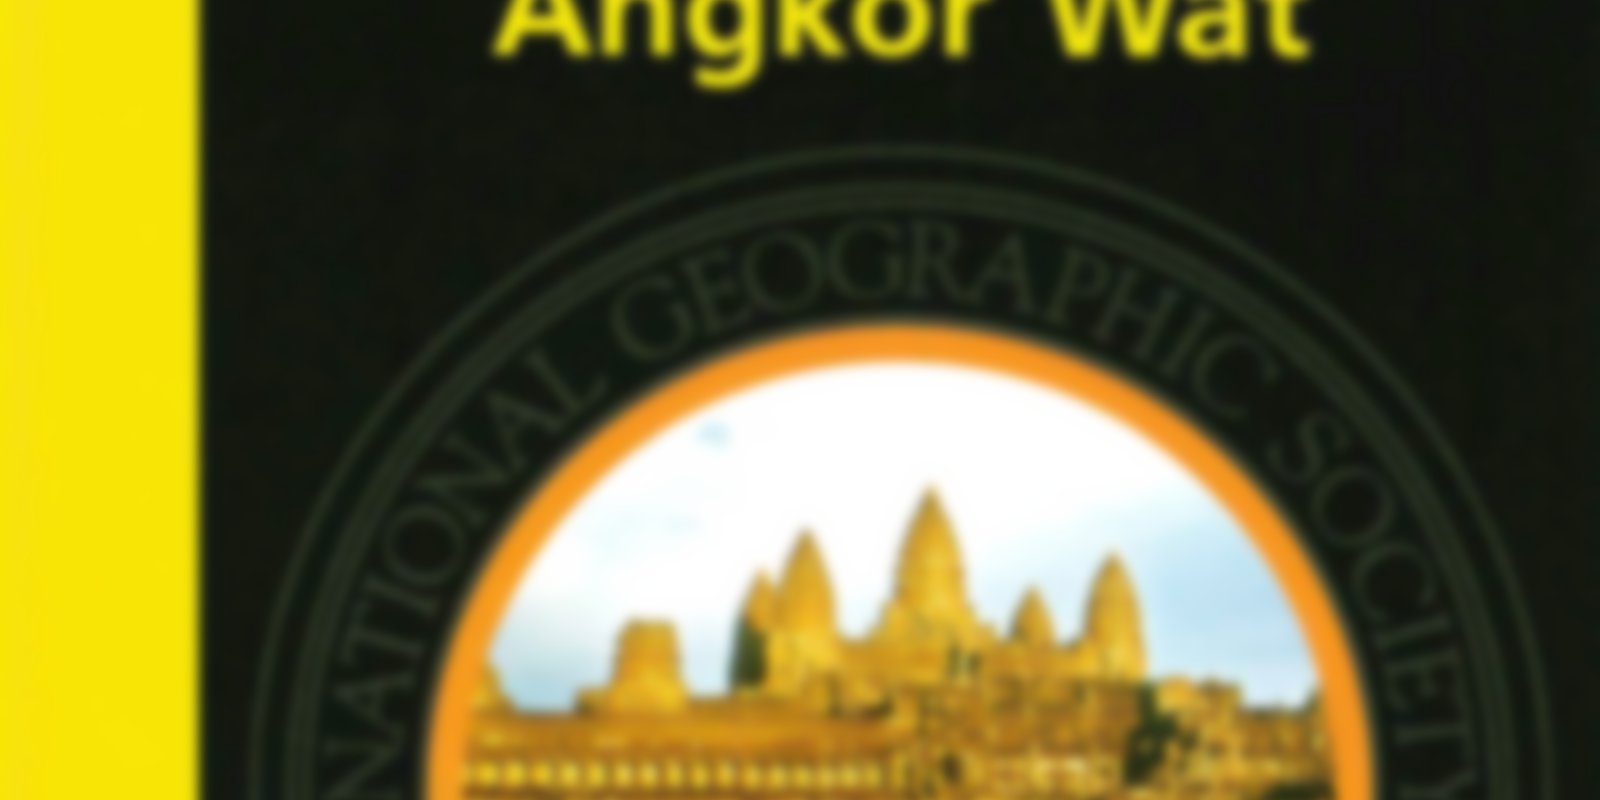 National Geographic - Der Glanz von Angkor Wat / Angkor - Im Reich der Khmer